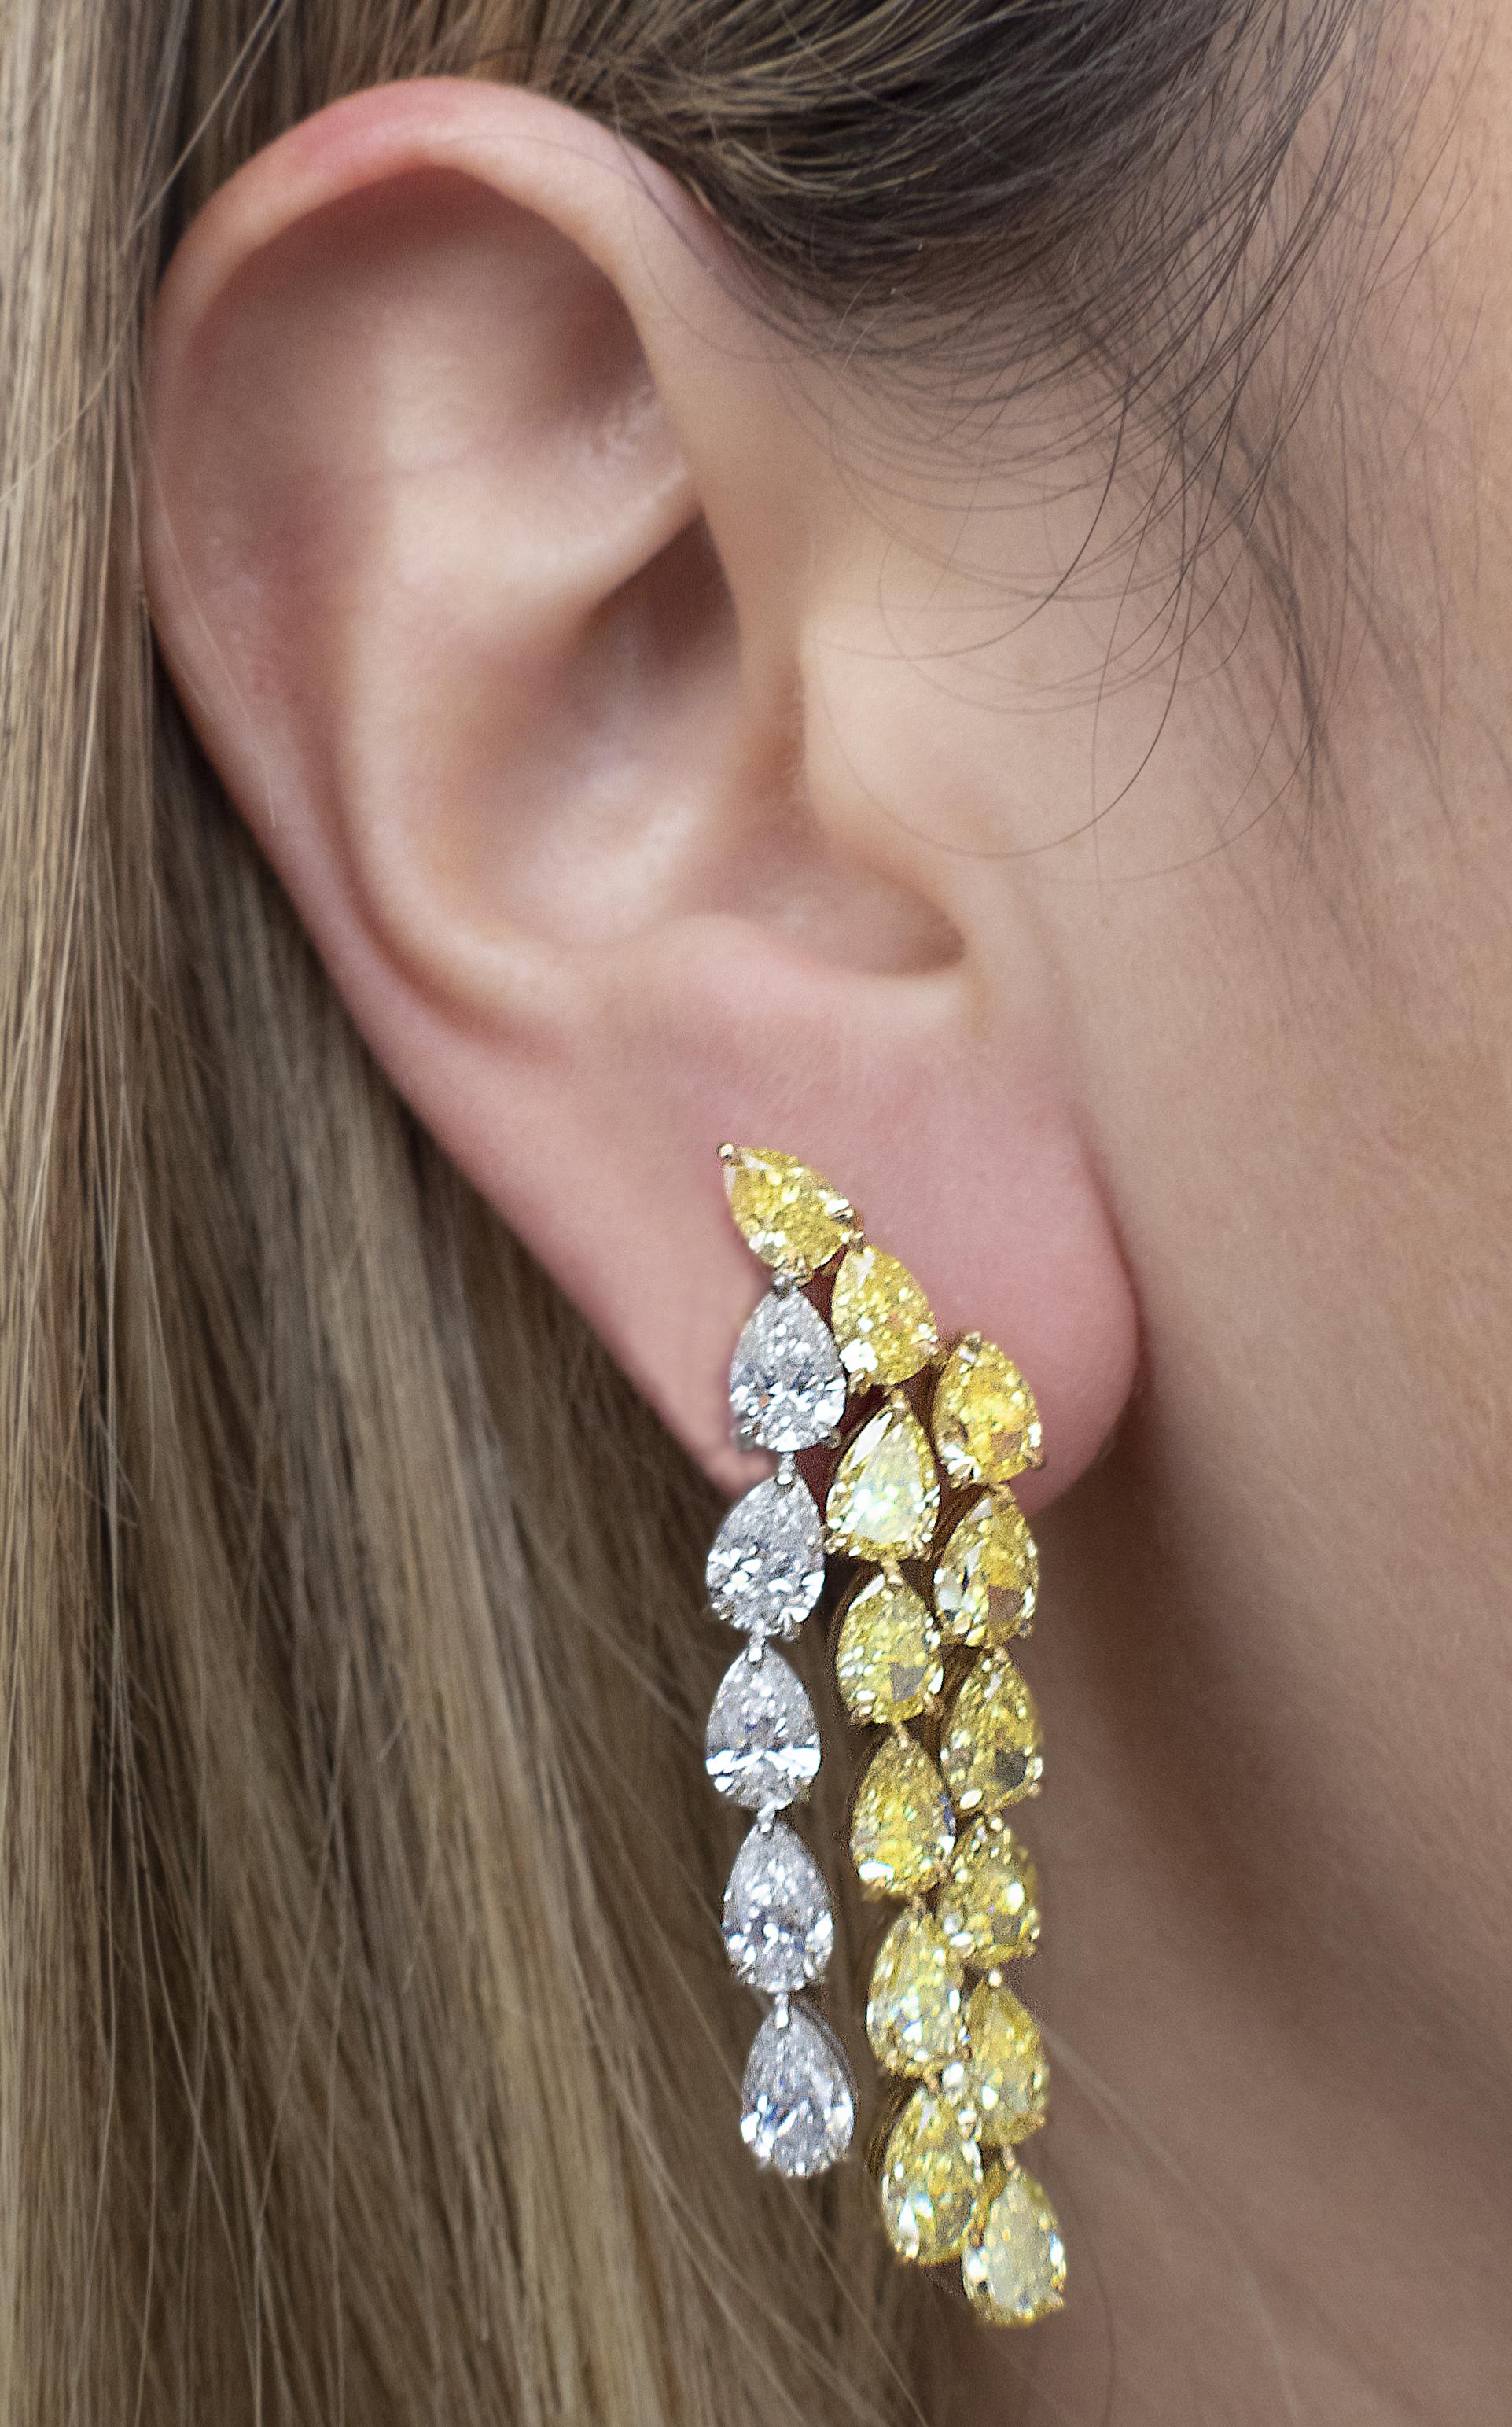 Boucles d'oreilles pendantes Captivating Vivid Diamonds en platine et or jaune 18 carats, présentant un magnifique ensemble de 36 diamants en forme de poire certifiés GIA, de couleur D-F et de pureté VS1-SI1, de couleur fantaisie intense jaune et